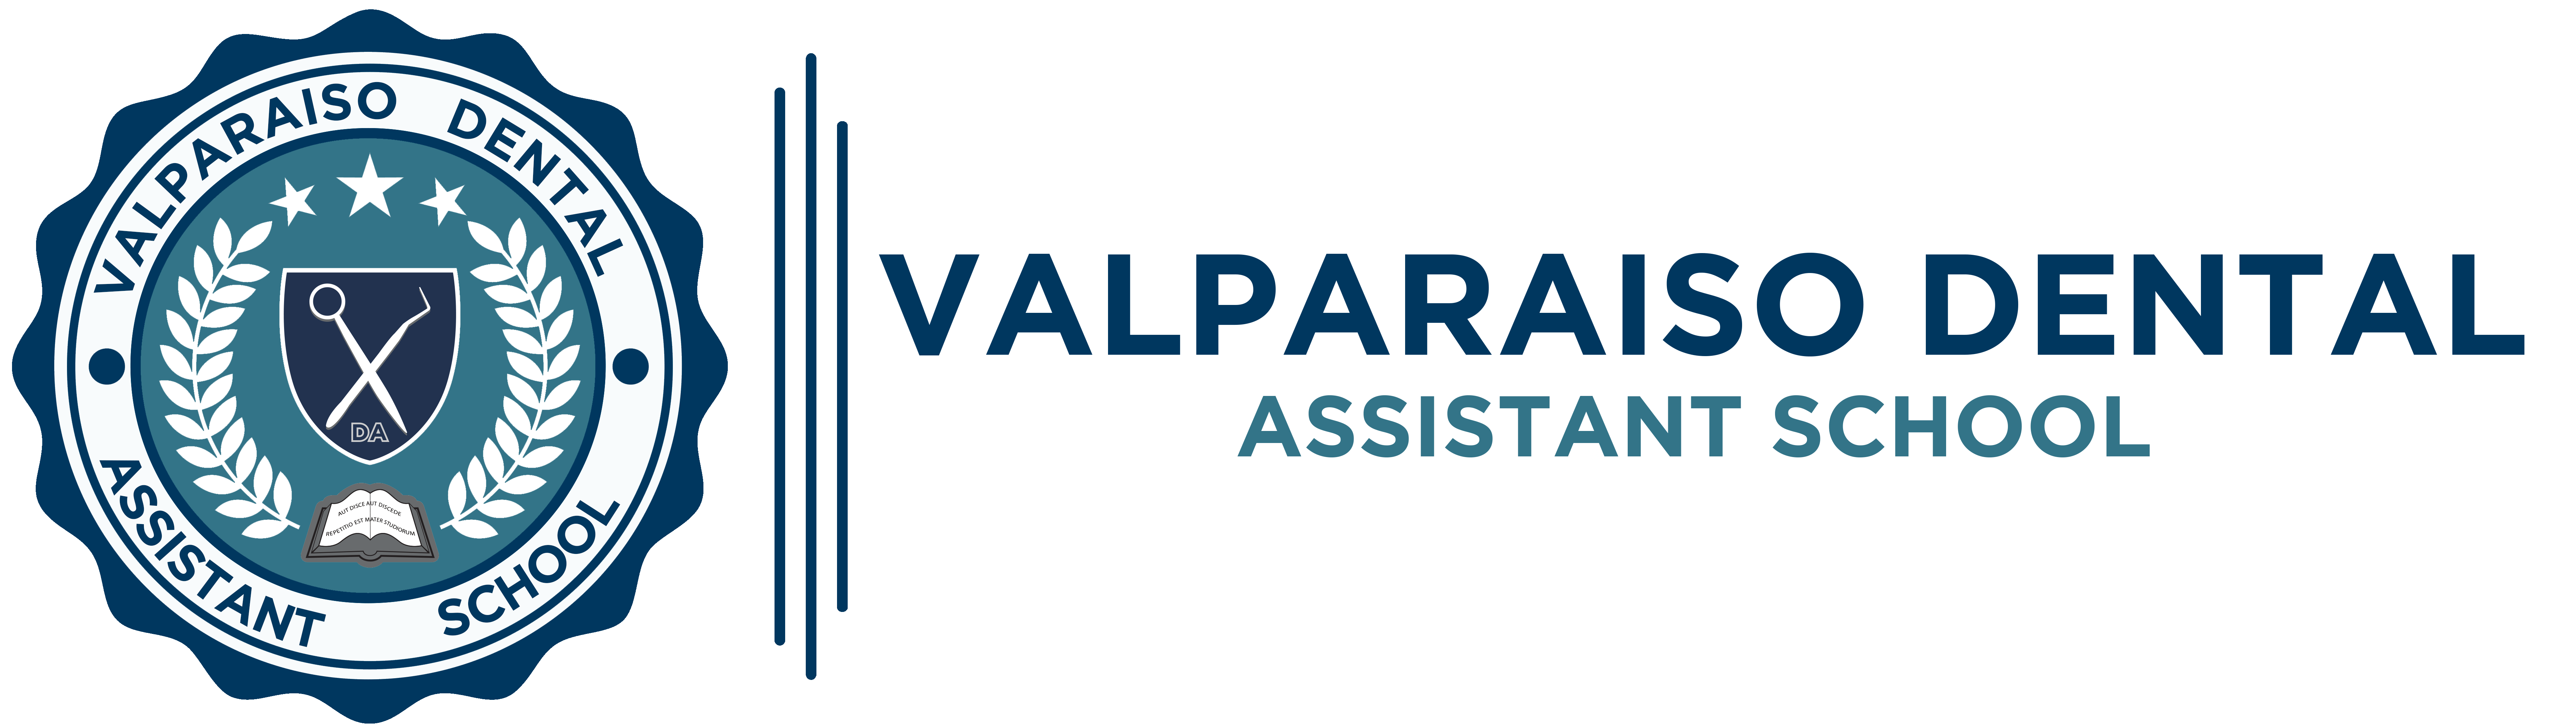 Valparaiso Dental Assistant School Logo